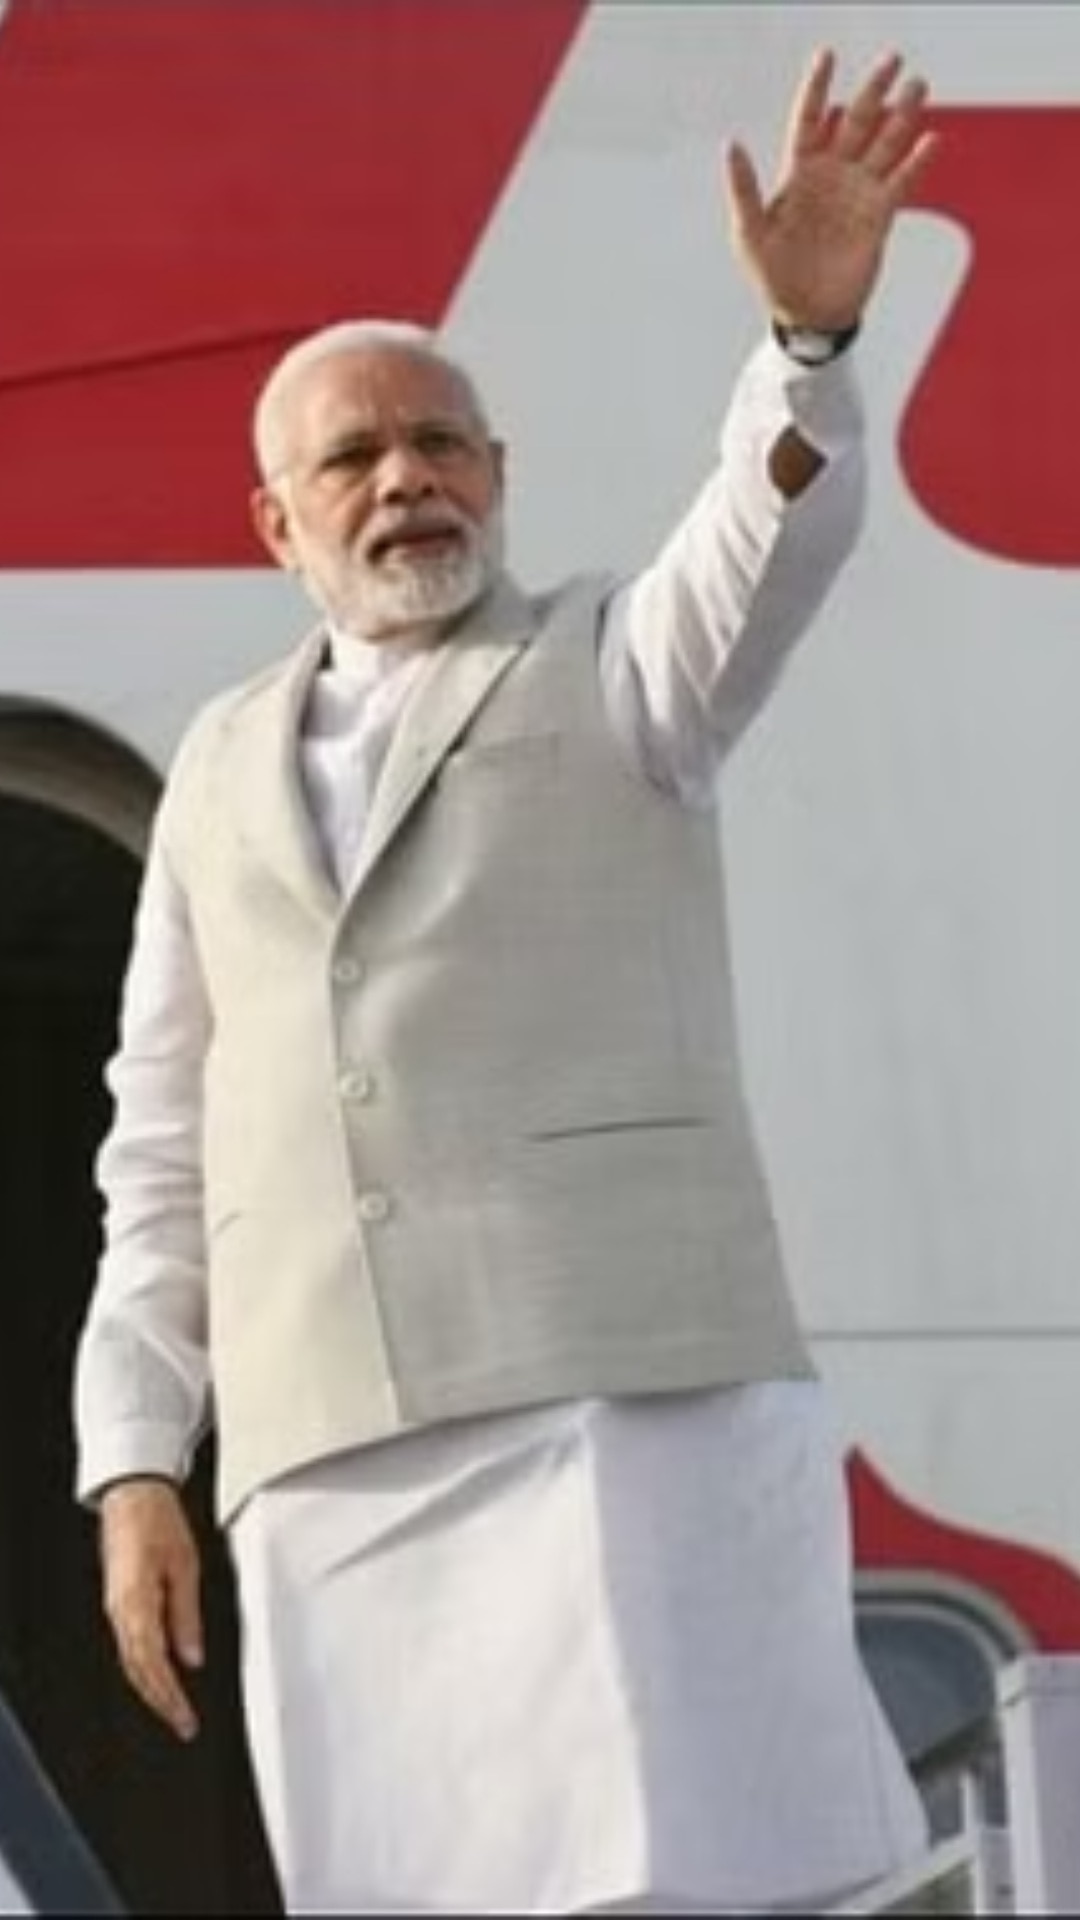 PM Modi US Visit: पीएम मोदी की वाशिंगटन यात्रा भारतीय-अमेरिकी मतदाताओं के बारे में क्या बताती है?